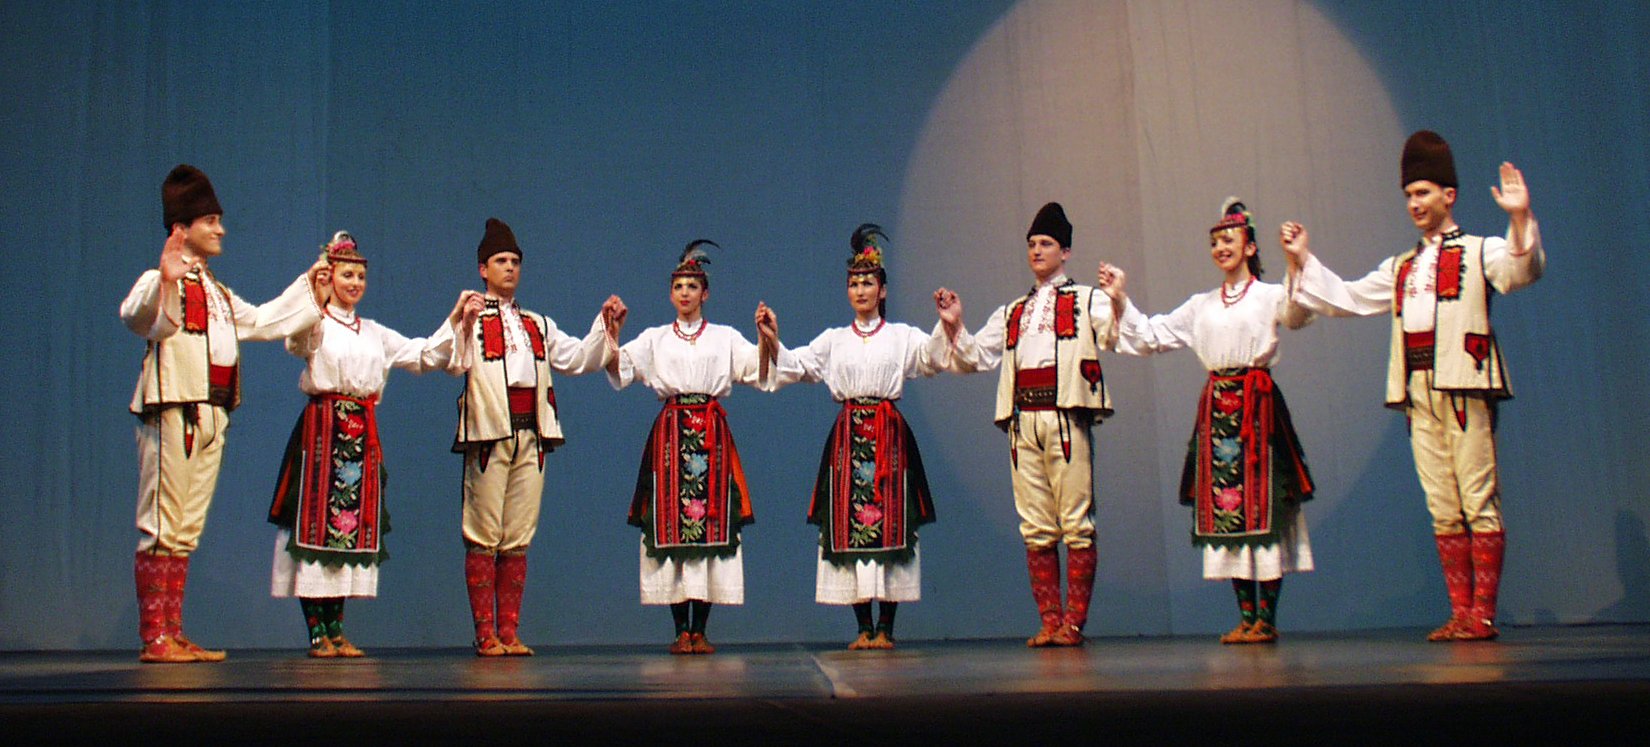 Национальный костюм Болгар в Бессарабии